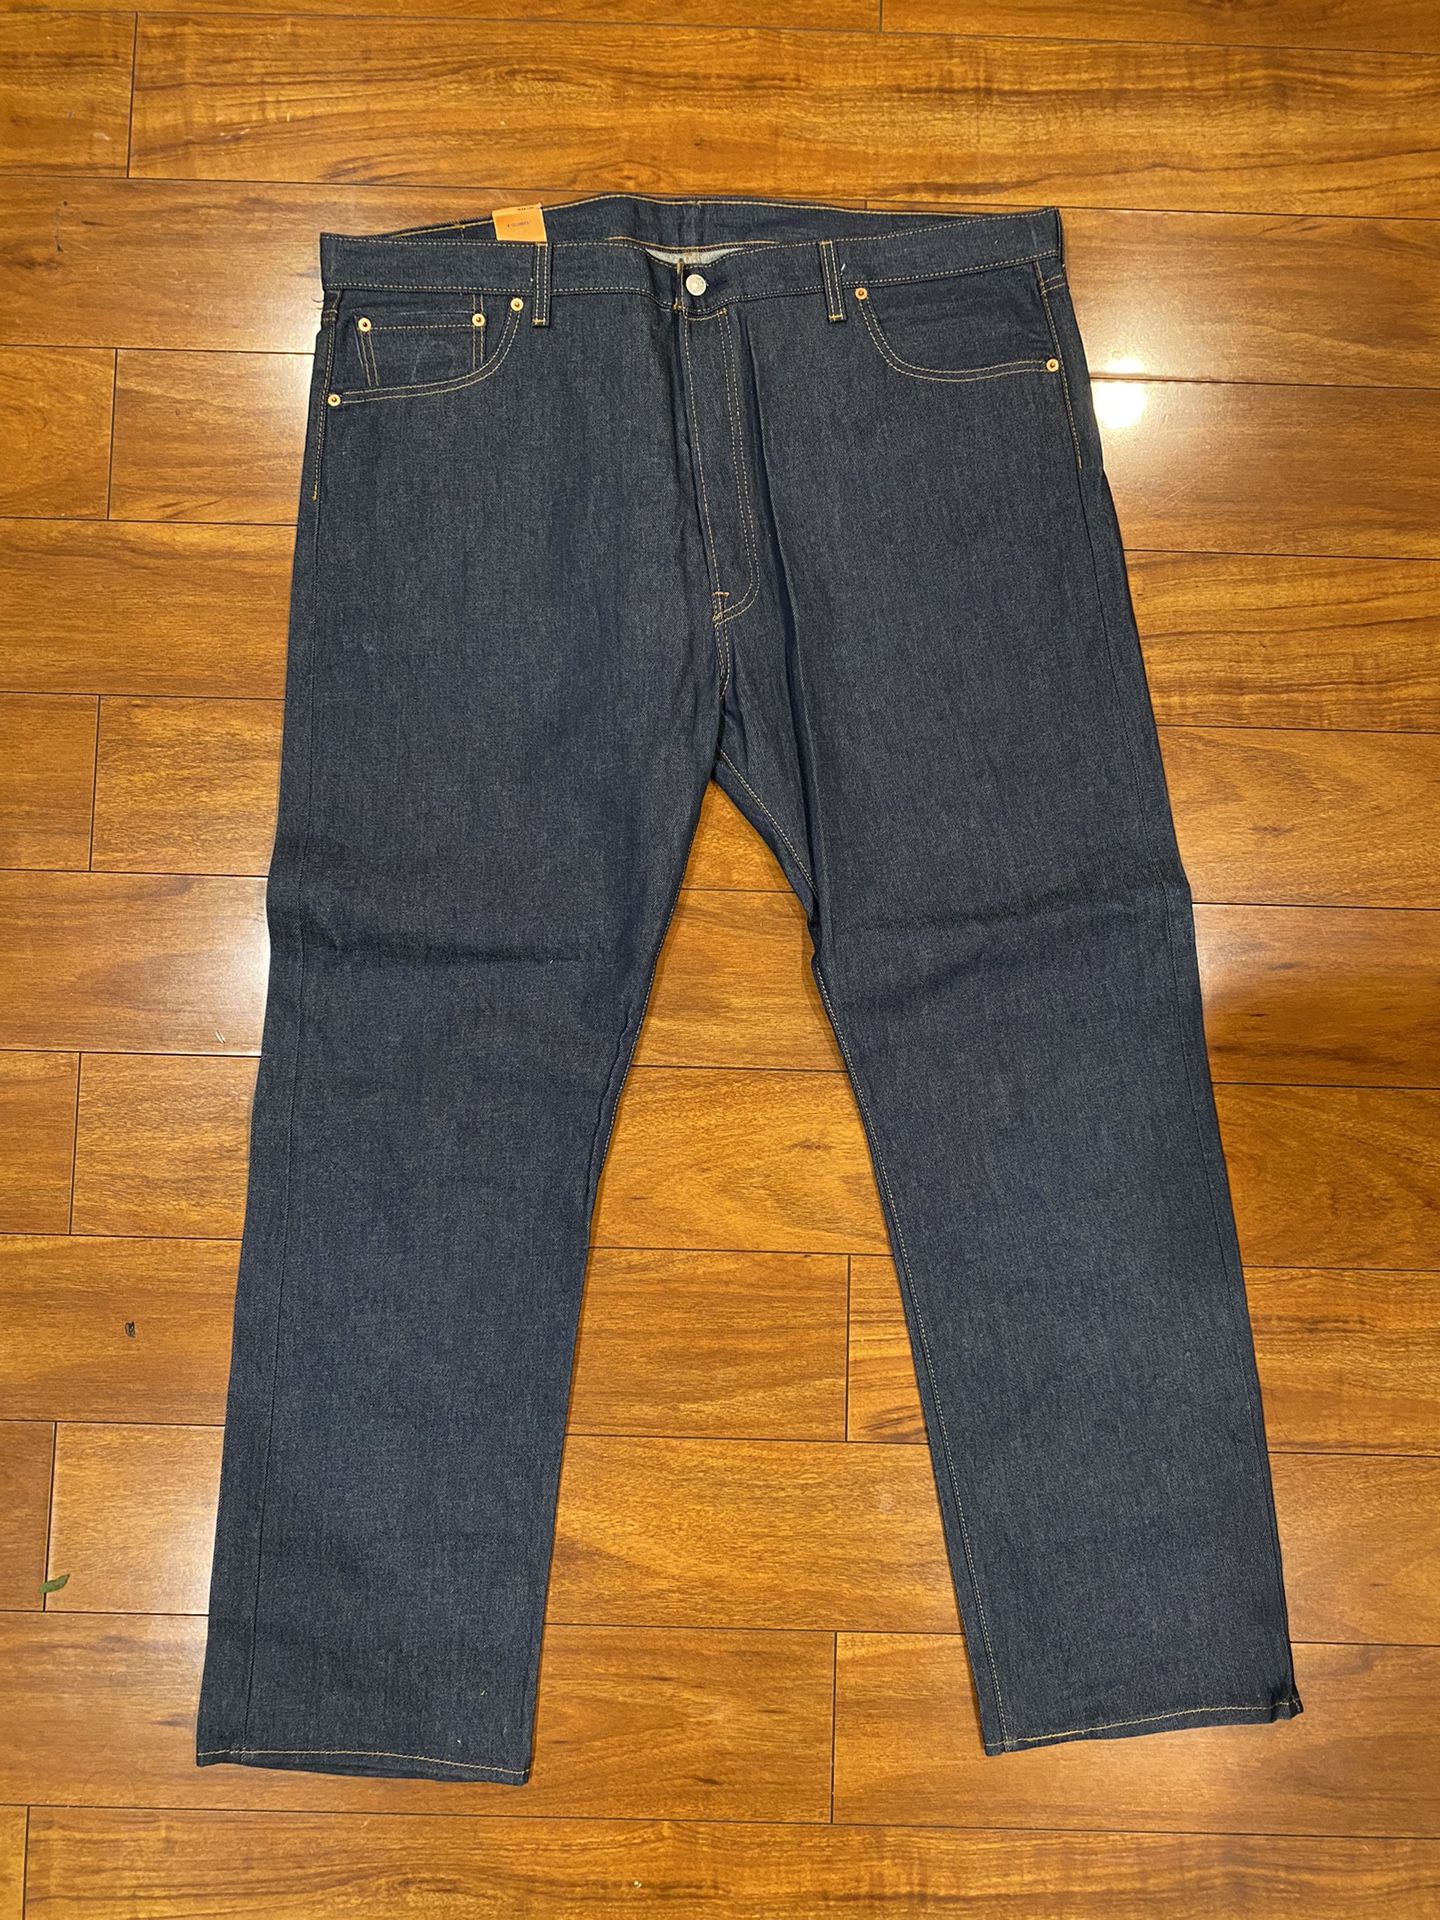 Levi's 501 Original Shrink To Fit Button Fly Jeans Rigid Blue Men's ...